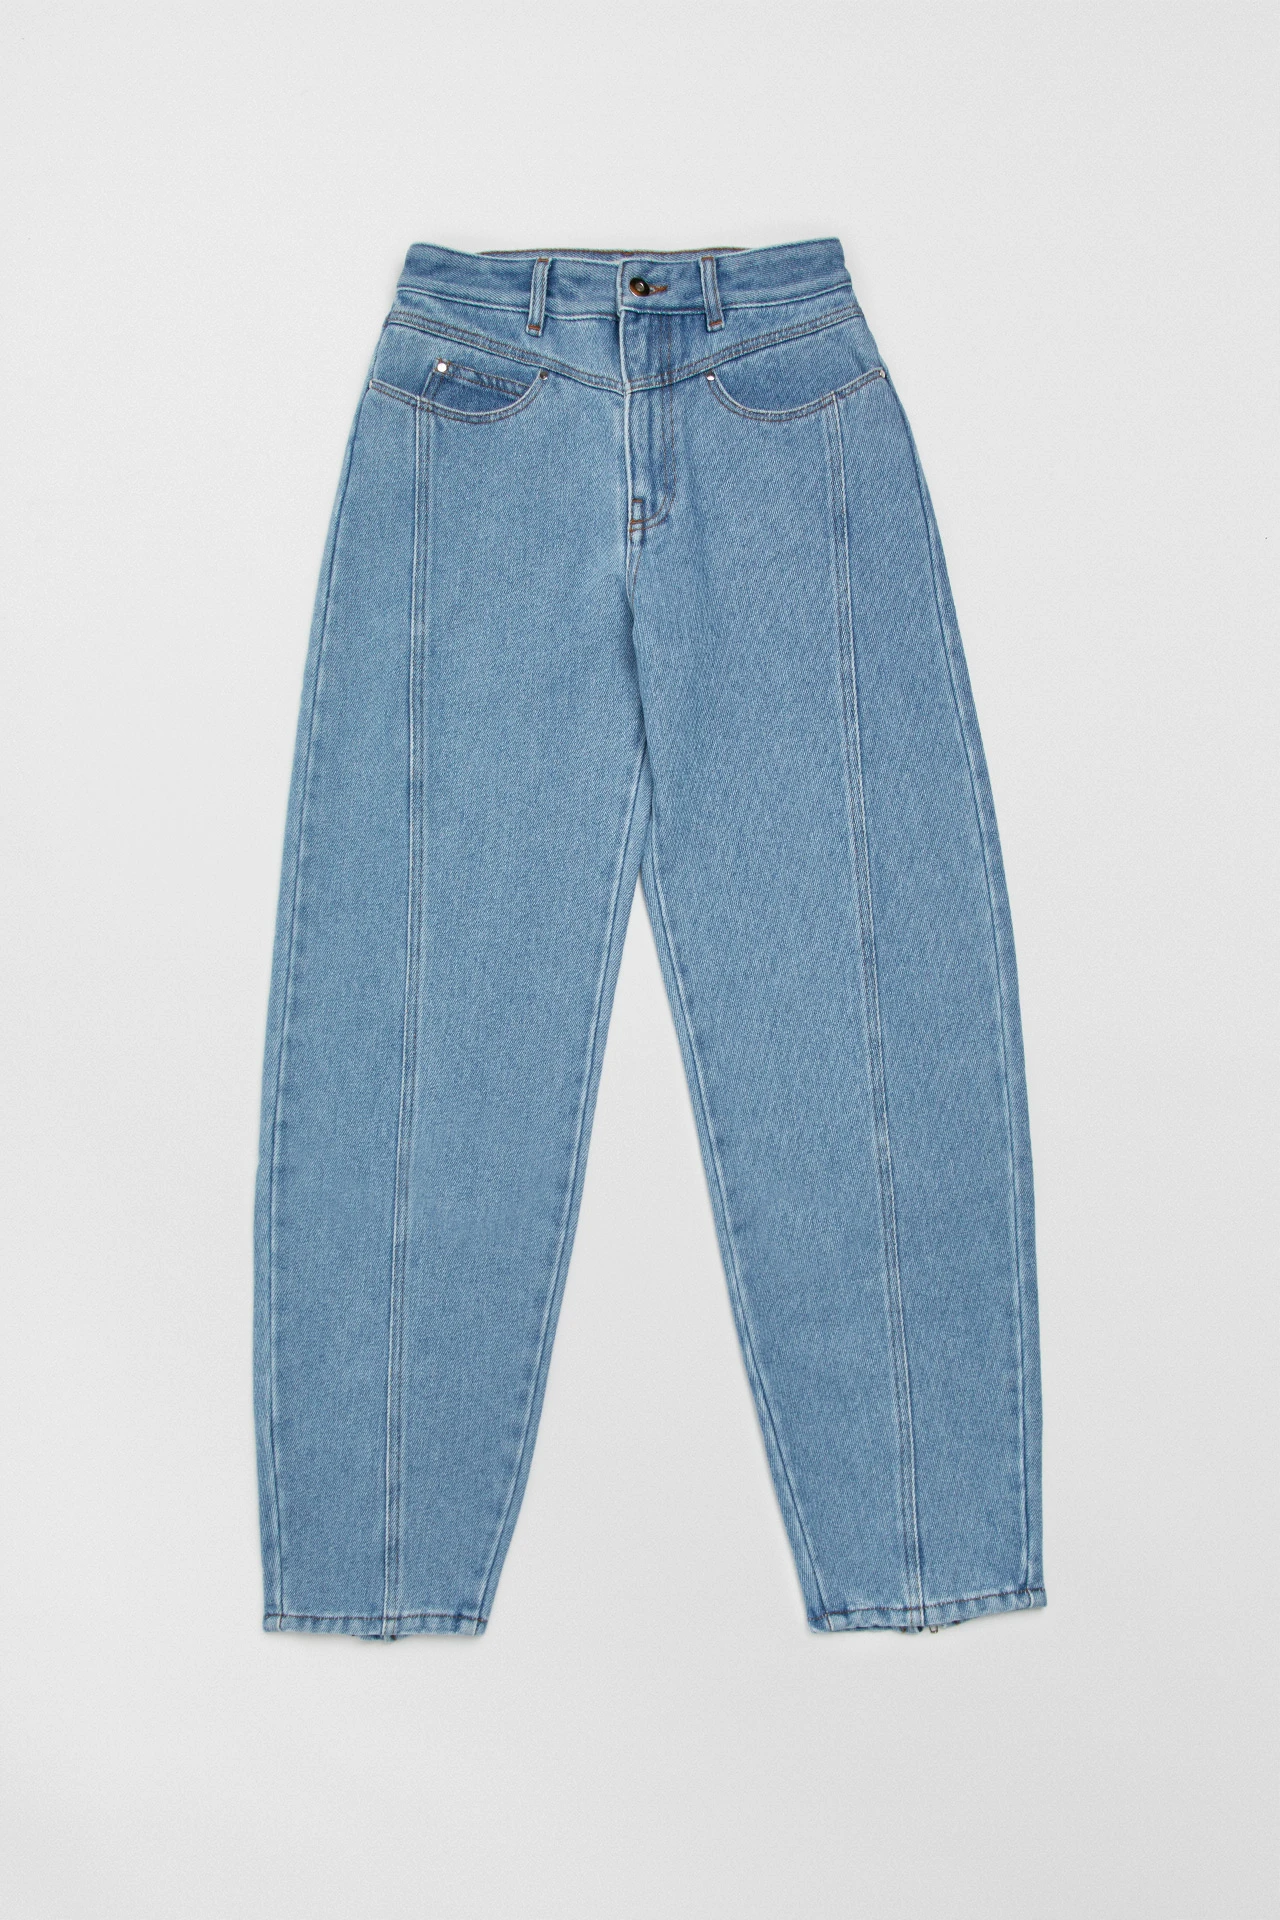 Miista-abai-sky-blue-jeans-01